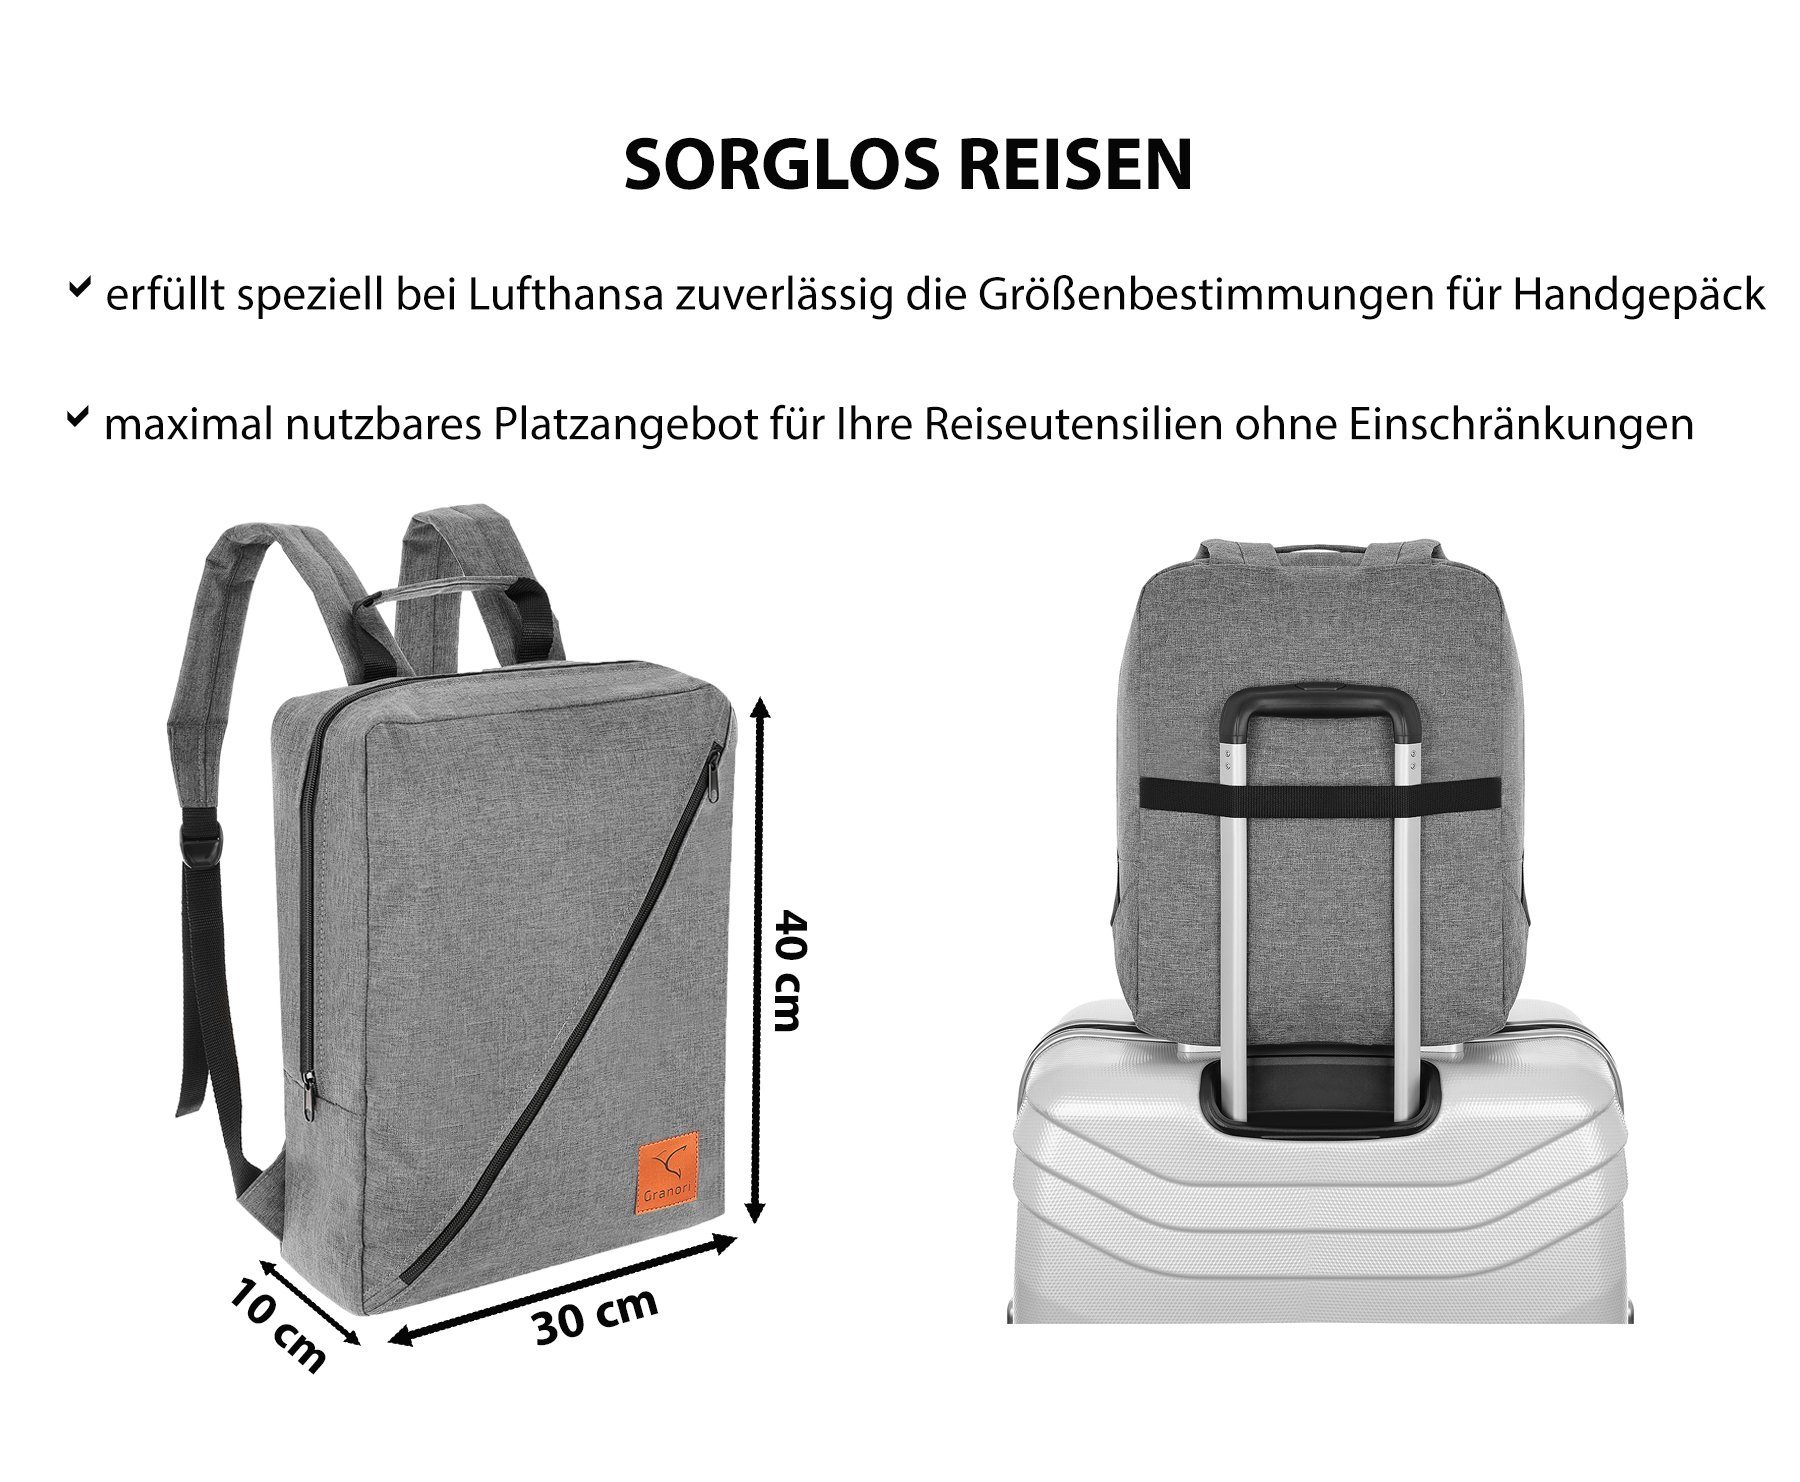 Granori Reiserucksack 40x30x10 cm Handgepäck abschließbar Lufthansa, leicht Grau für extra und